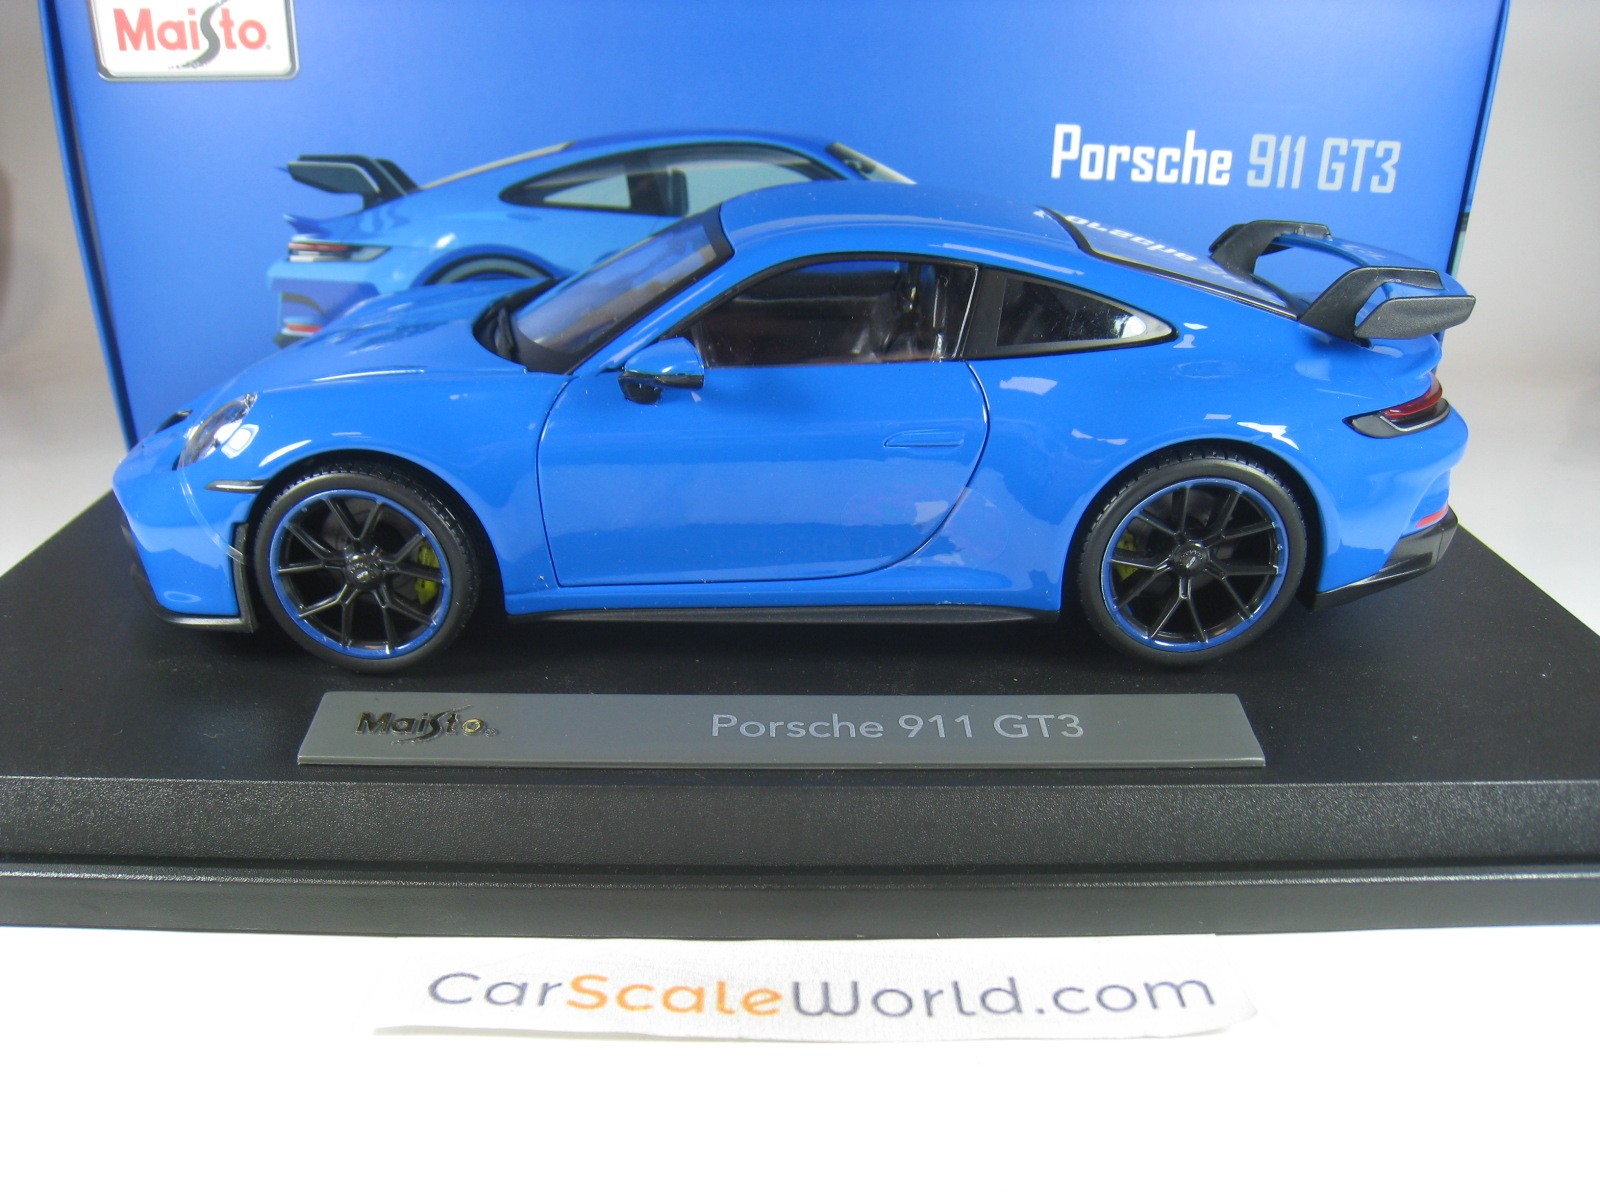 Coche modelo coupé azul claro escala 1/18 1:18 Porsche 911 992